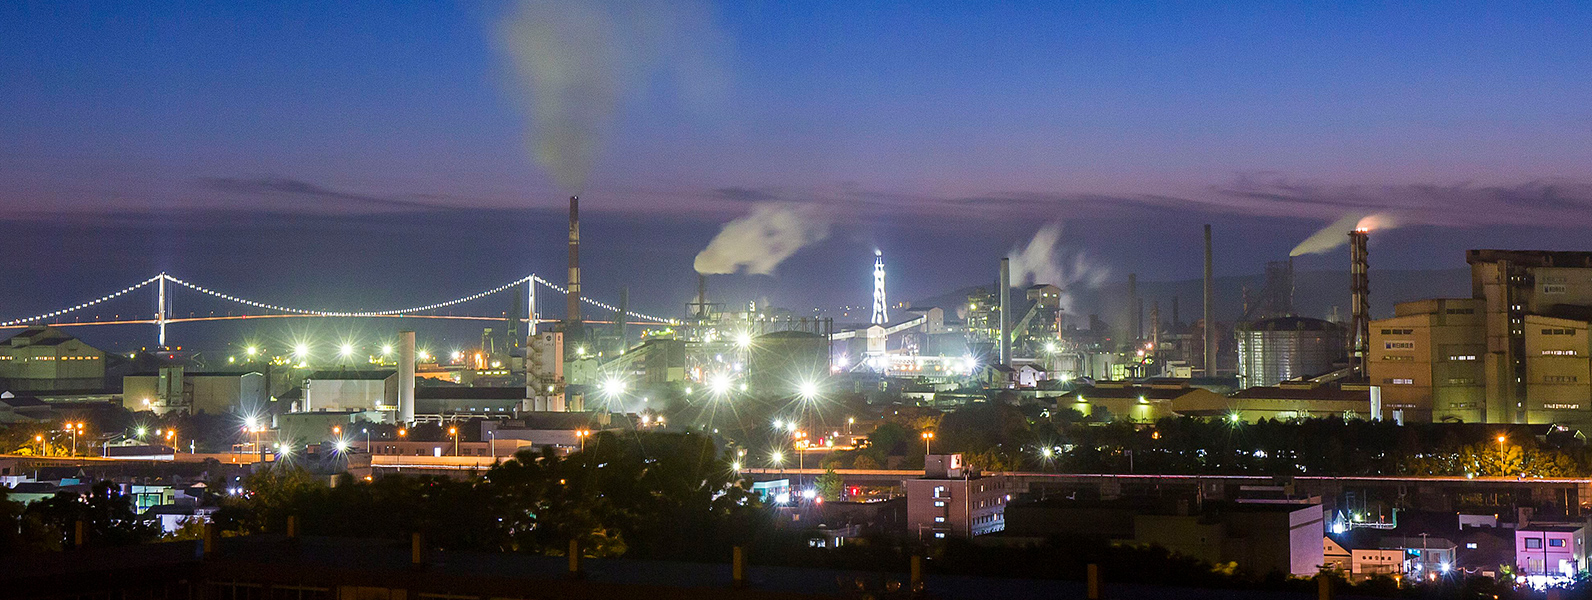 室蘭市工場夜景